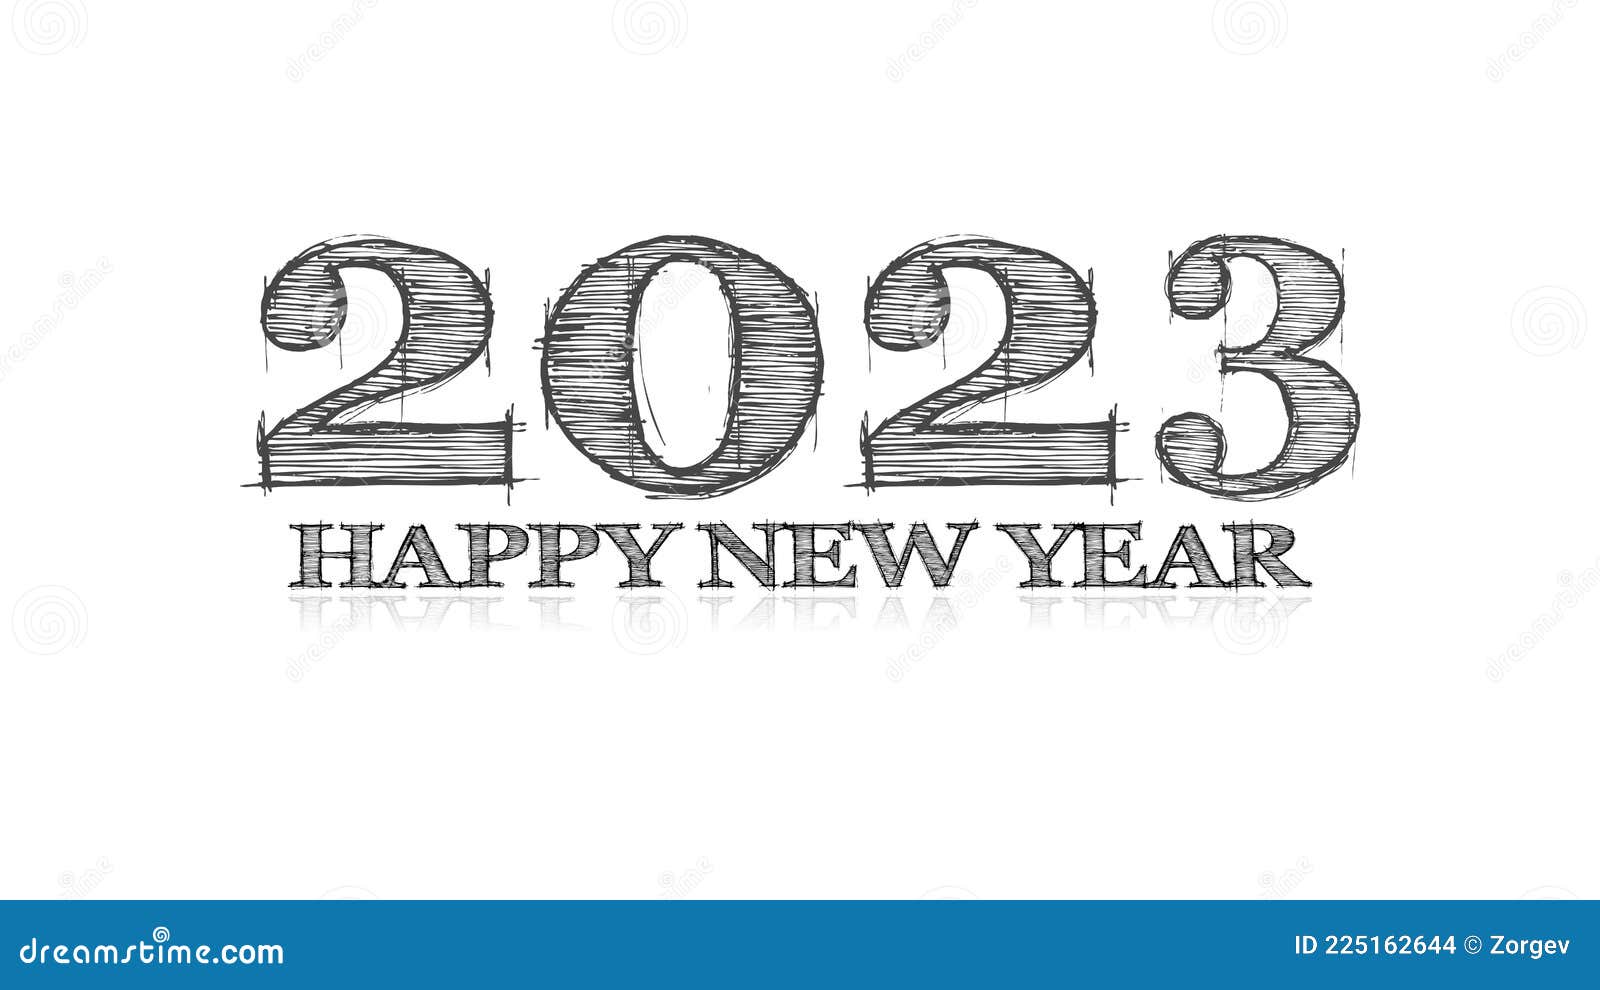 25 imágenes para felicitar el Año Nuevo 2023 por WhatsApp